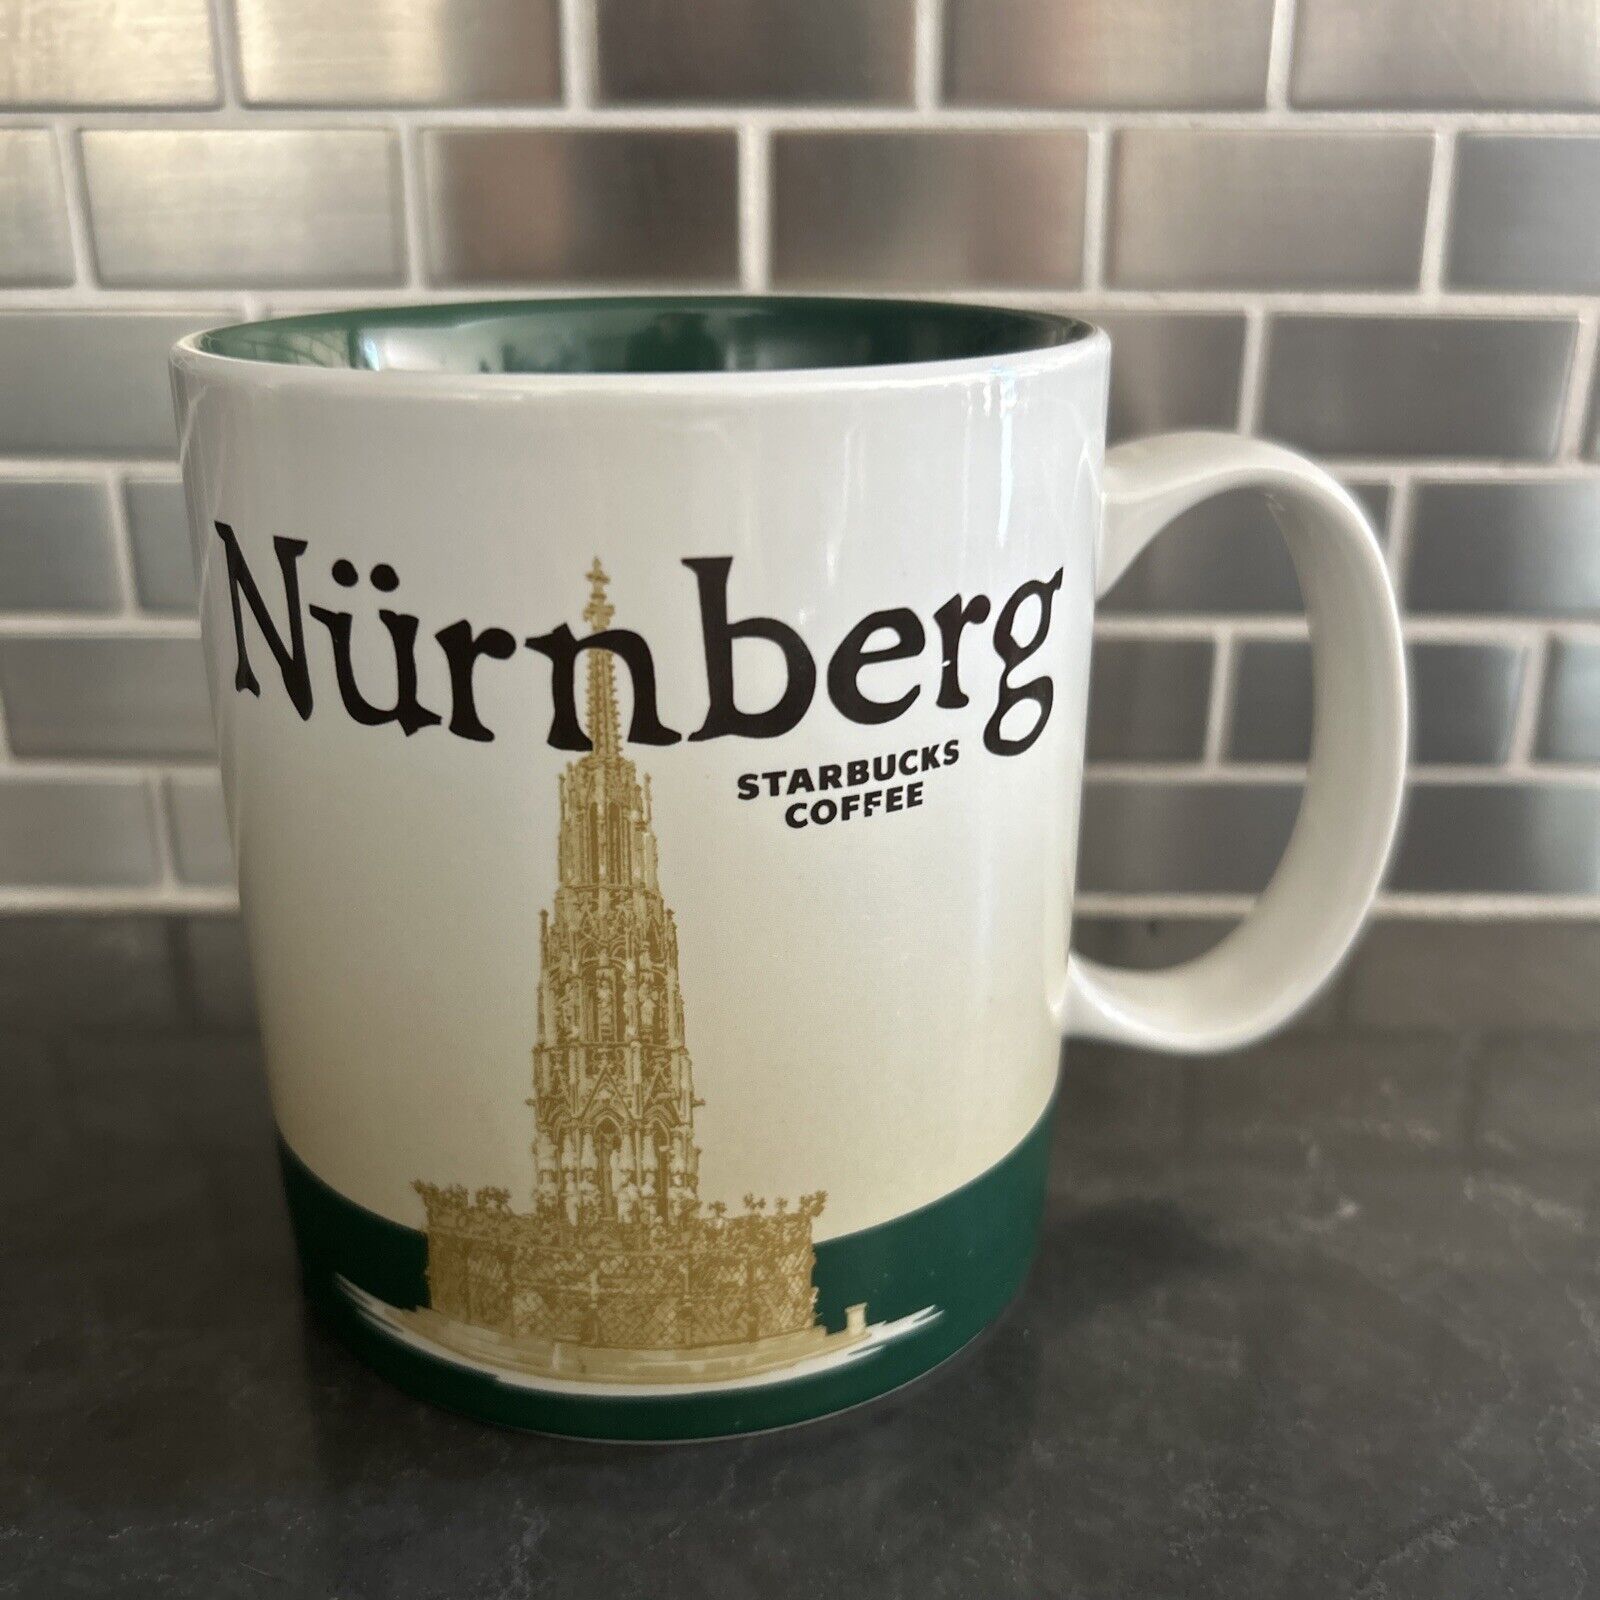 Nuremberg Starbucks Icon Mug 2014 Collector Series Nürnberg